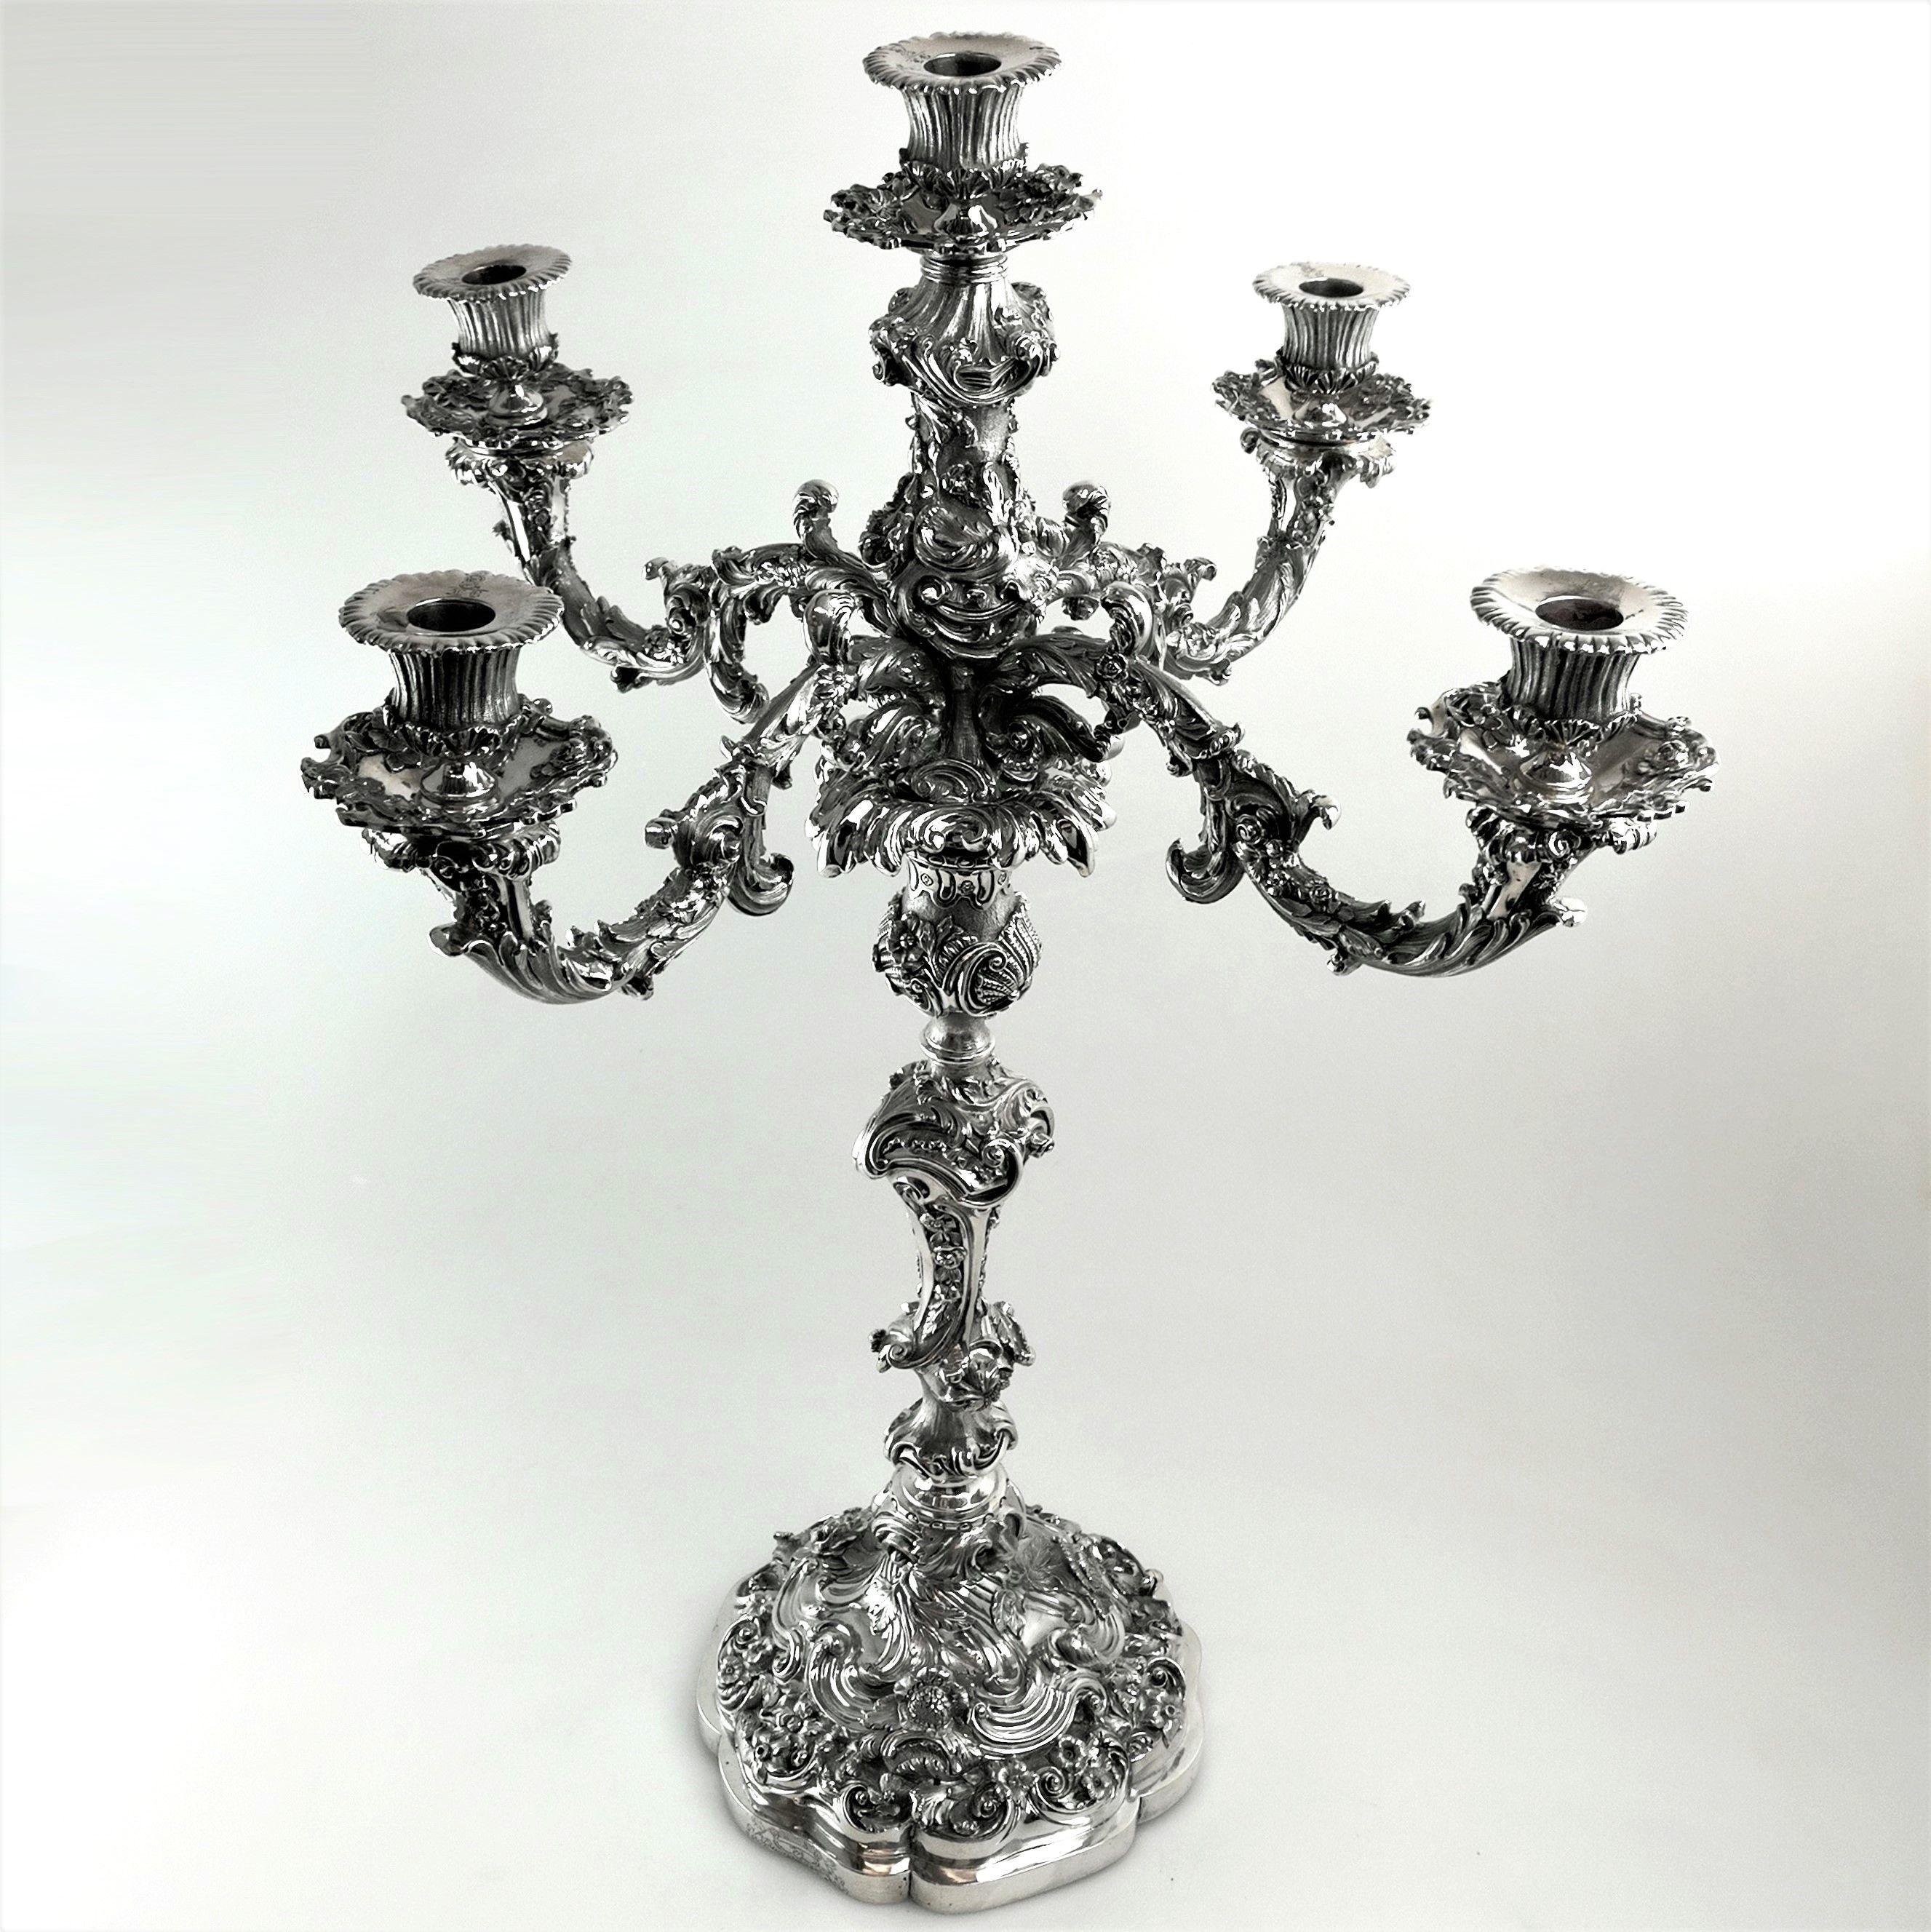 Ein prächtiger antiker viktorianischer Leuchter mit fünf Kerzen. Dieser Kandelaber hat eine beachtliche Größe und ein beträchtliches Gewicht. Der Kandelaber ist mit einem prächtigen Blumen-:: Blatt- und Schnörkelmuster verziert. Dieses Muster